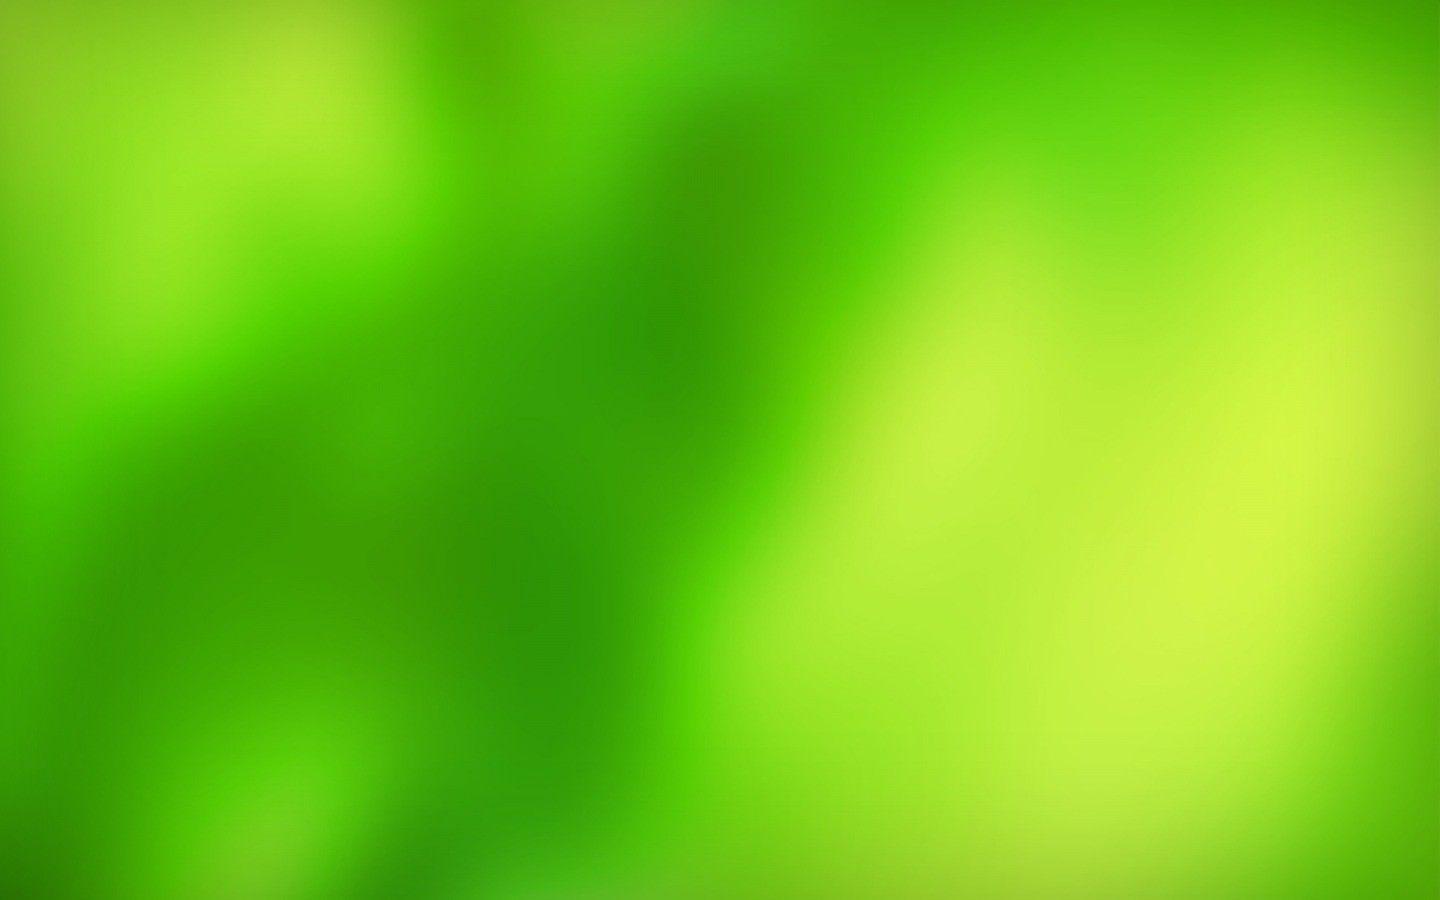 1440x900 1440x900 hình nền và nền dốc màu xanh lá cây